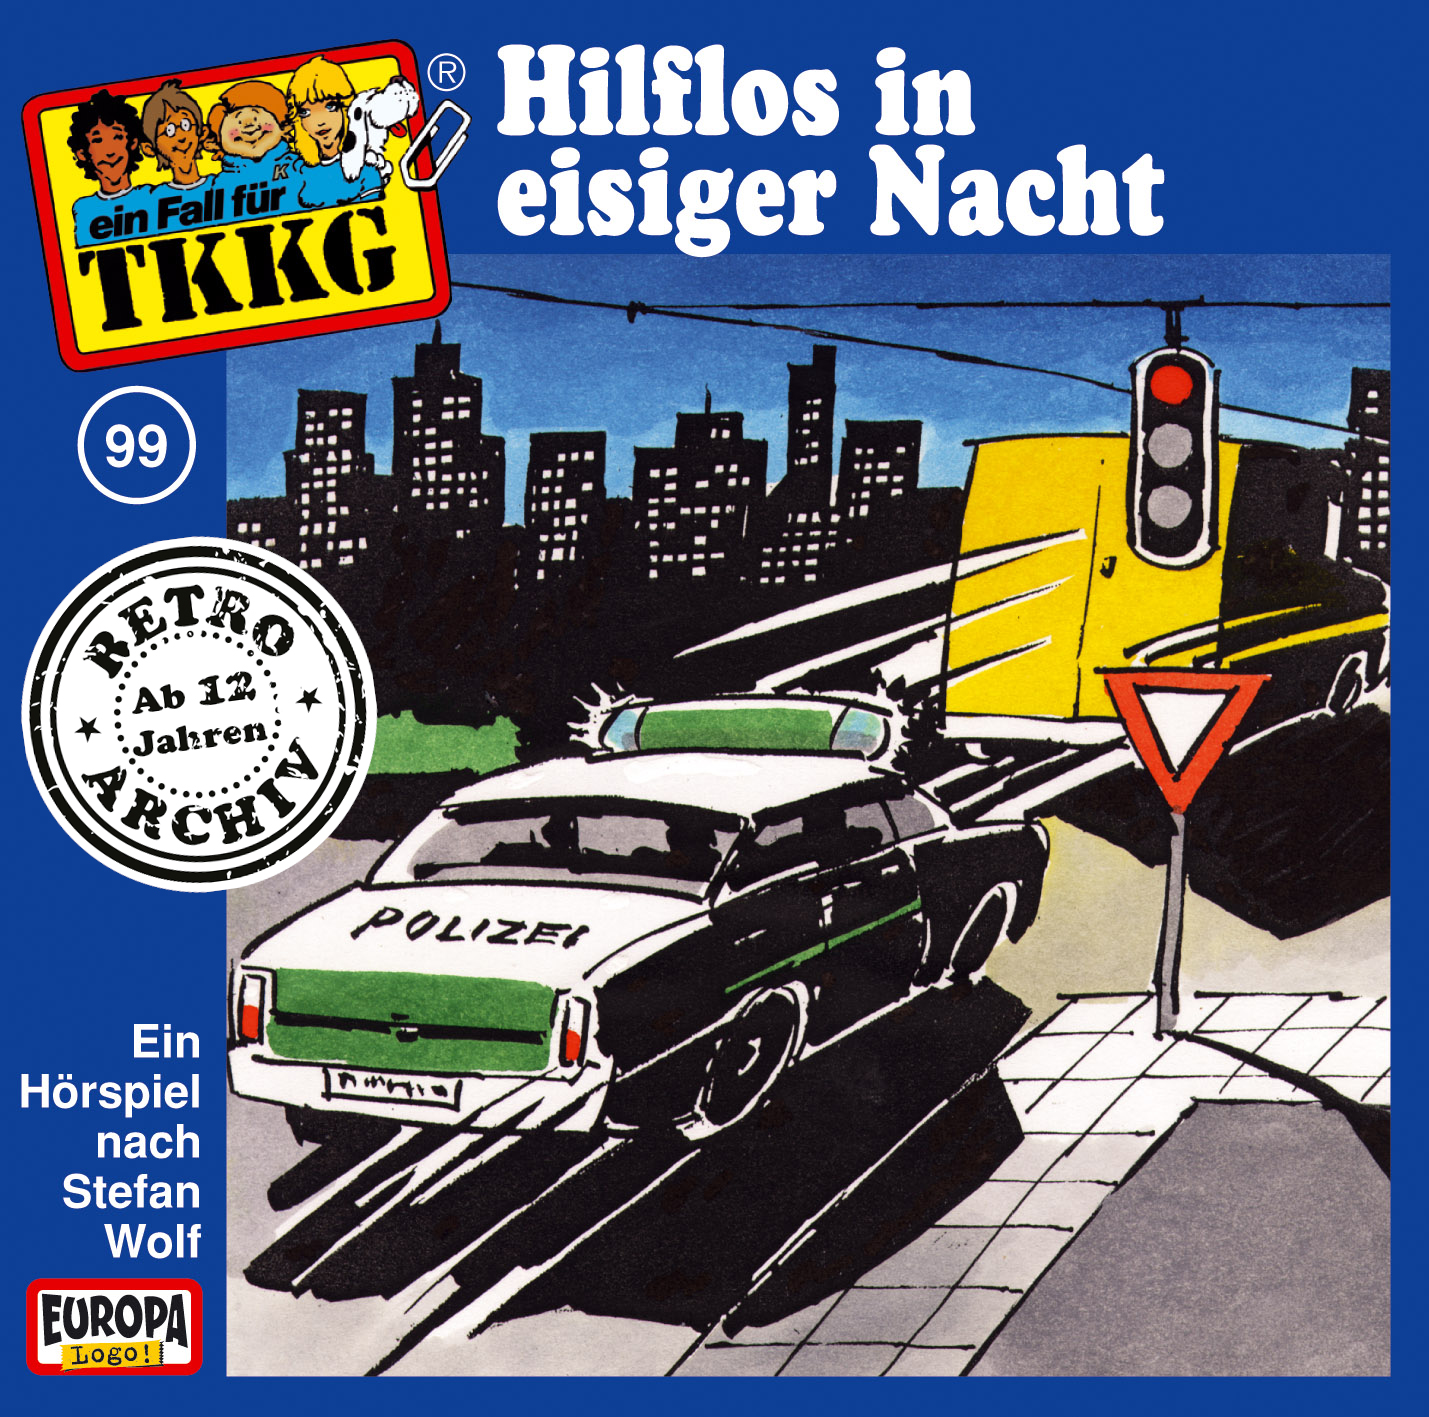 TKKG Retro-Archiv - Hilflos in eisiger Nacht